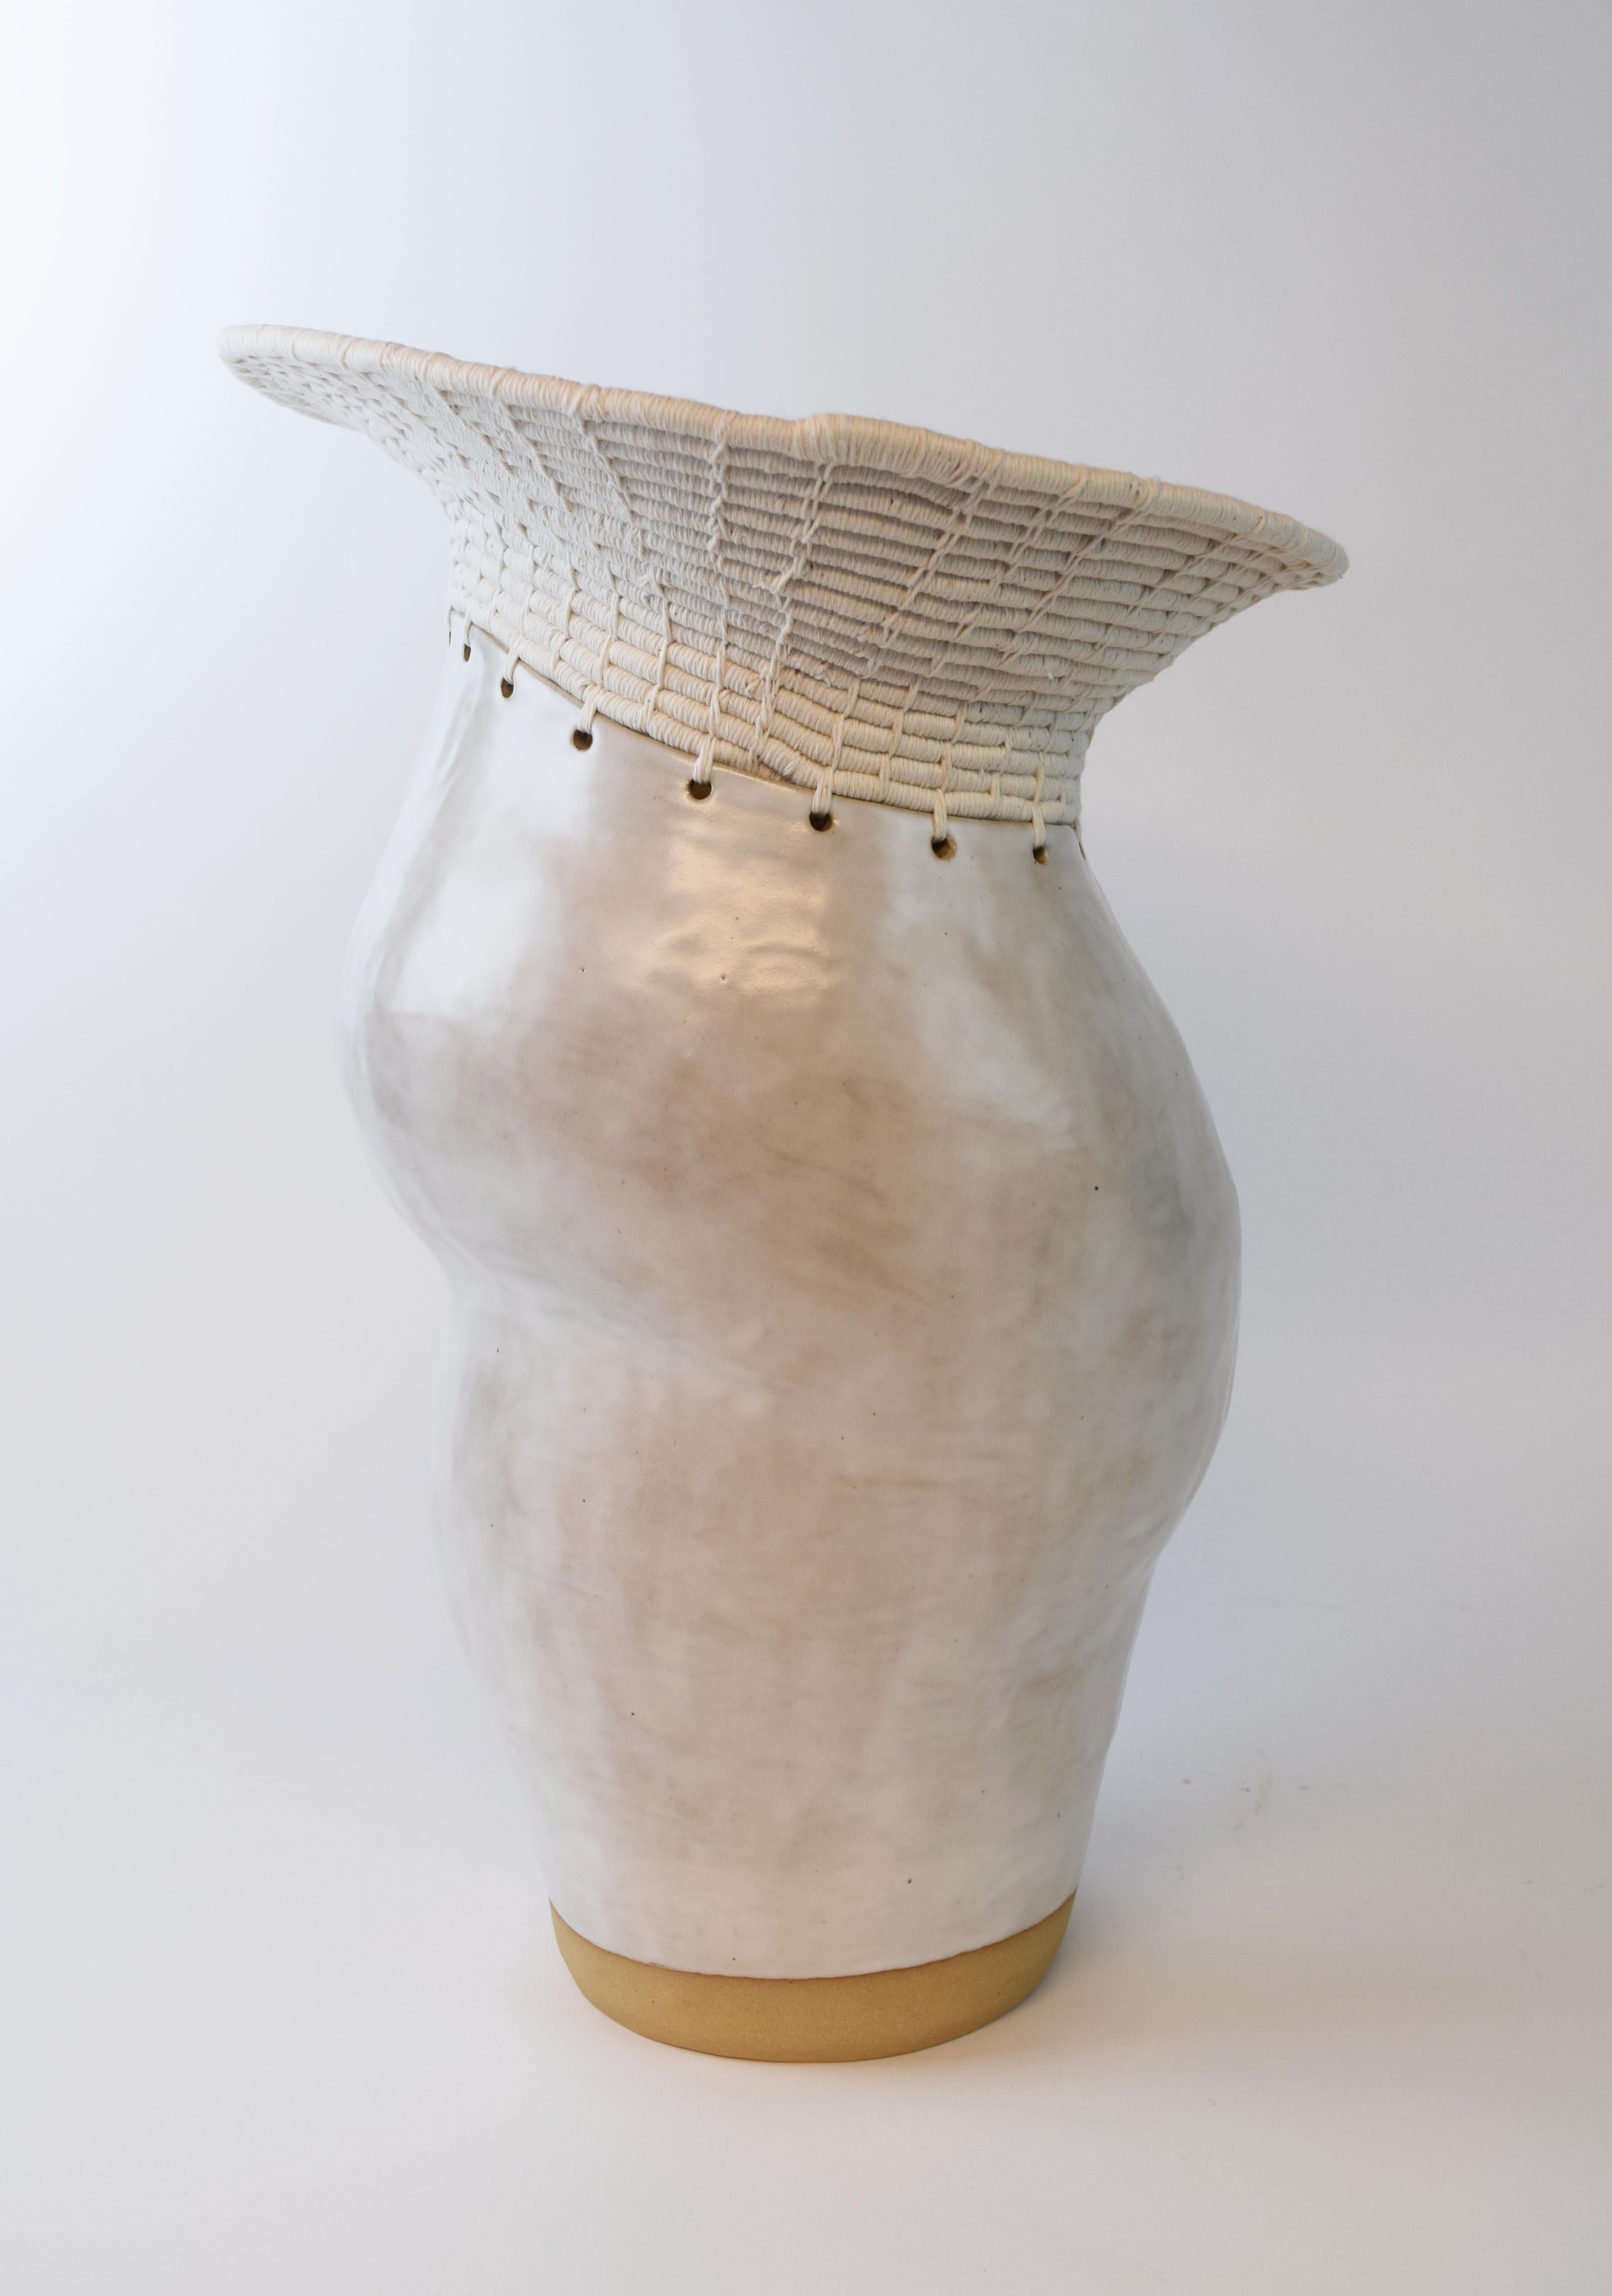 Handgeformtes, asymmetrisches Gefäß aus Steinzeug mit satinweißer Glasur. Der obere Teil des Gefäßes ist aus weißer Baumwolle gewebt, was das Zusammenspiel von Keramik und Fasern verdeutlicht. 

Maße: 18,5 